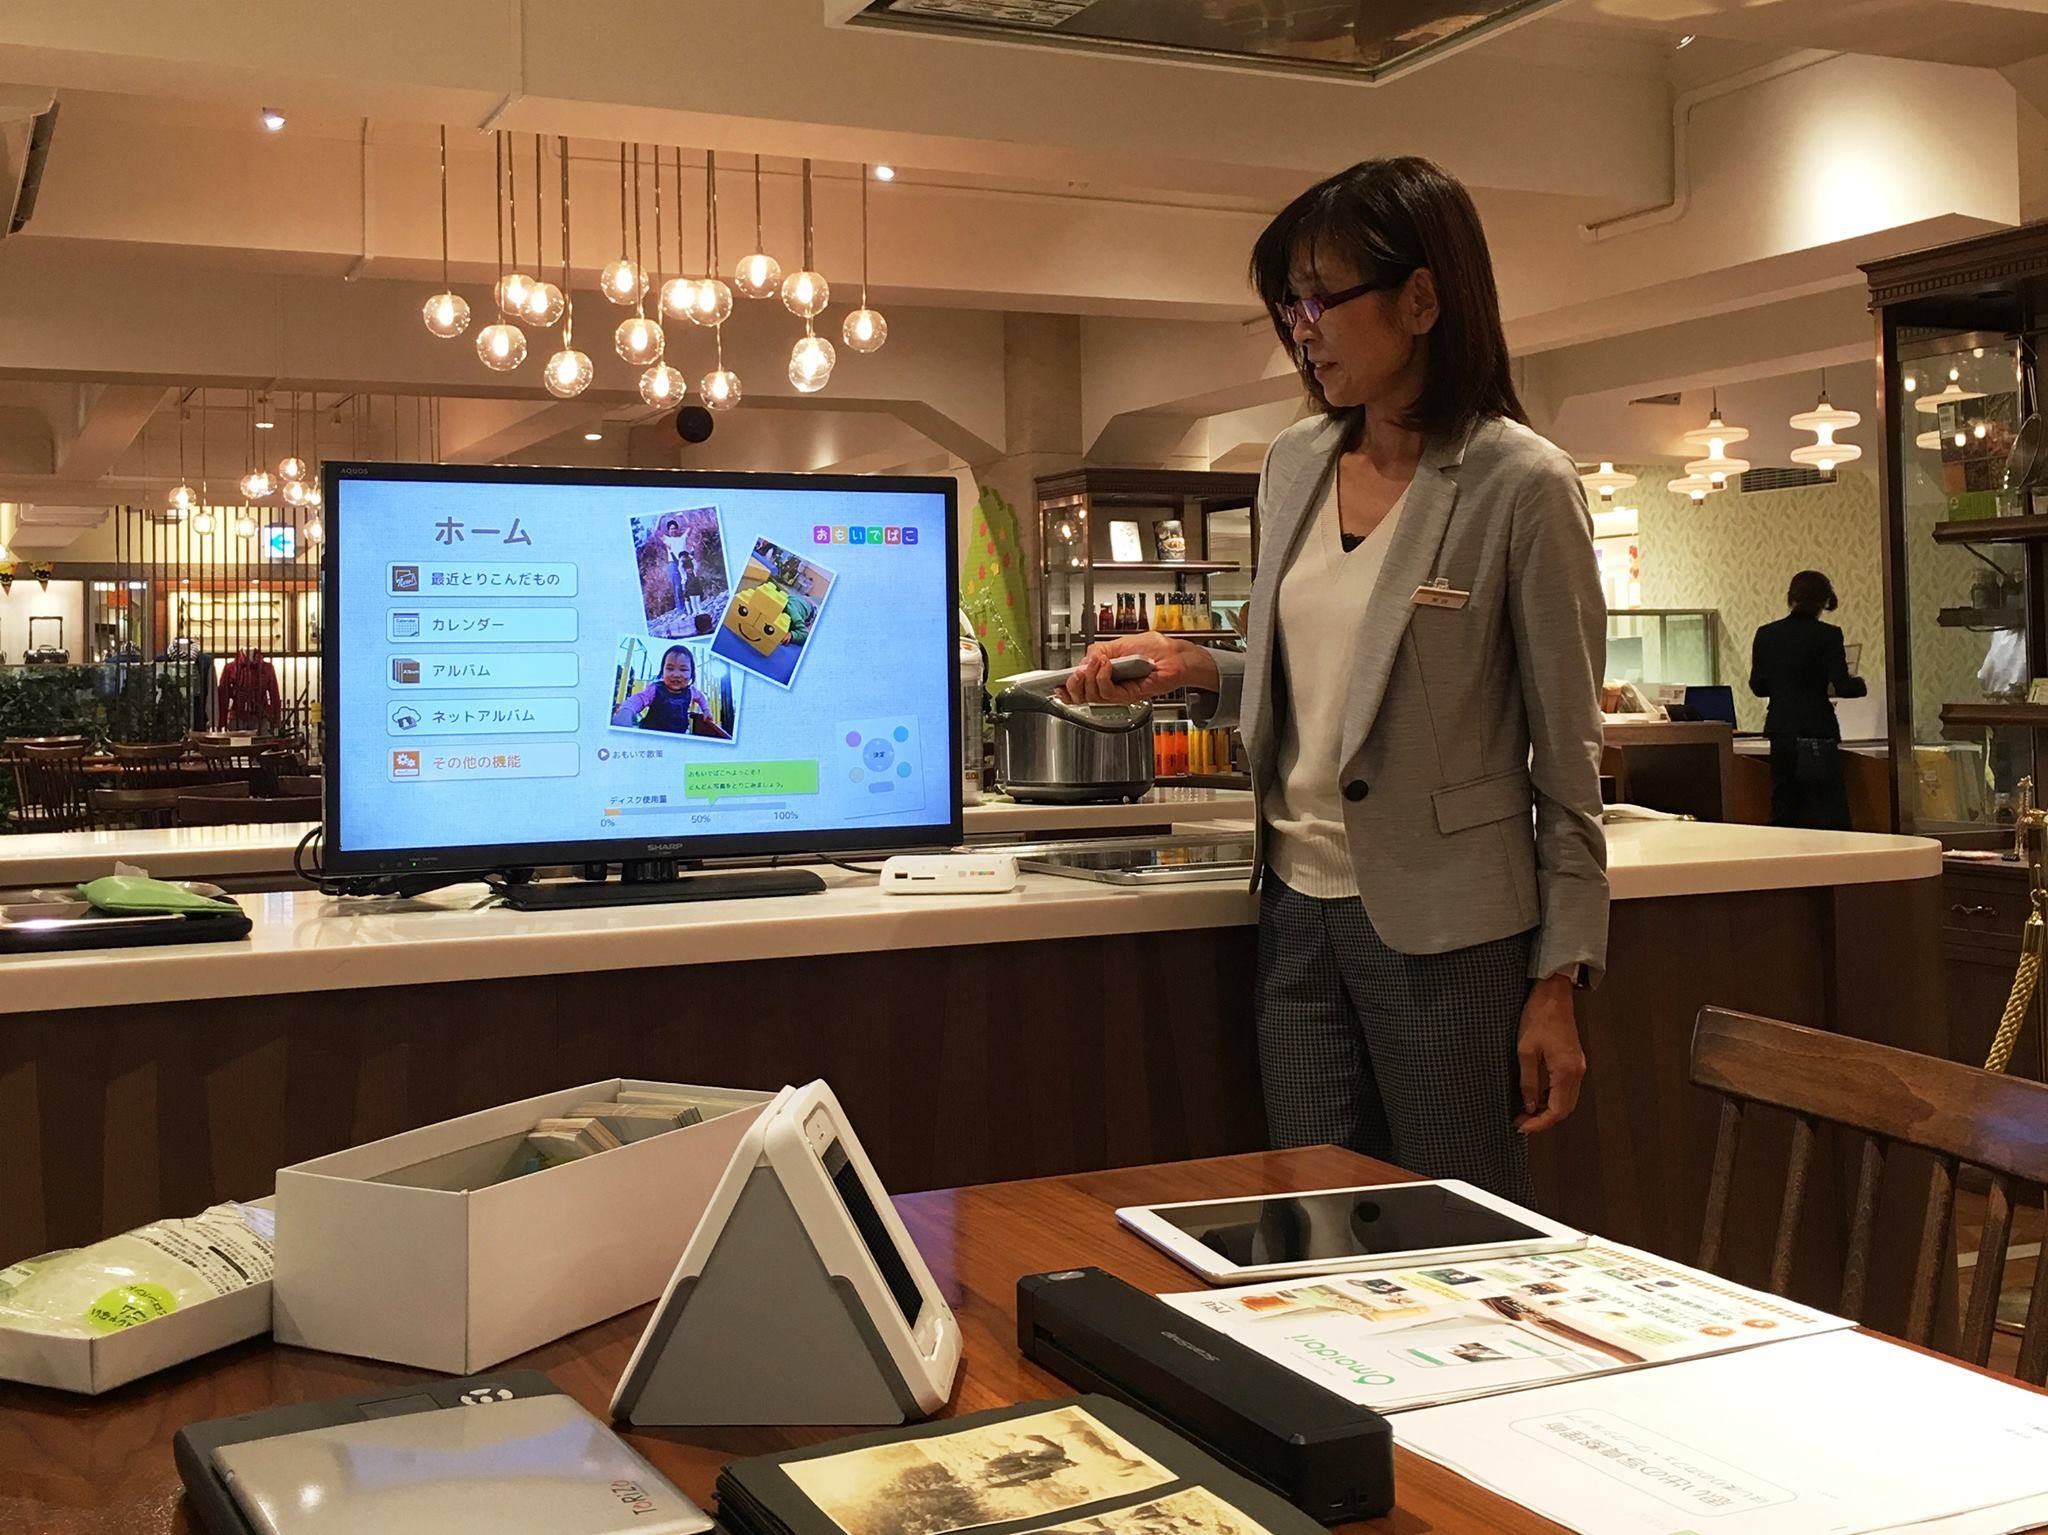 【体験】デジタル写真をシッカリ整理 – 日本橋三越「はじまりのカフェ」